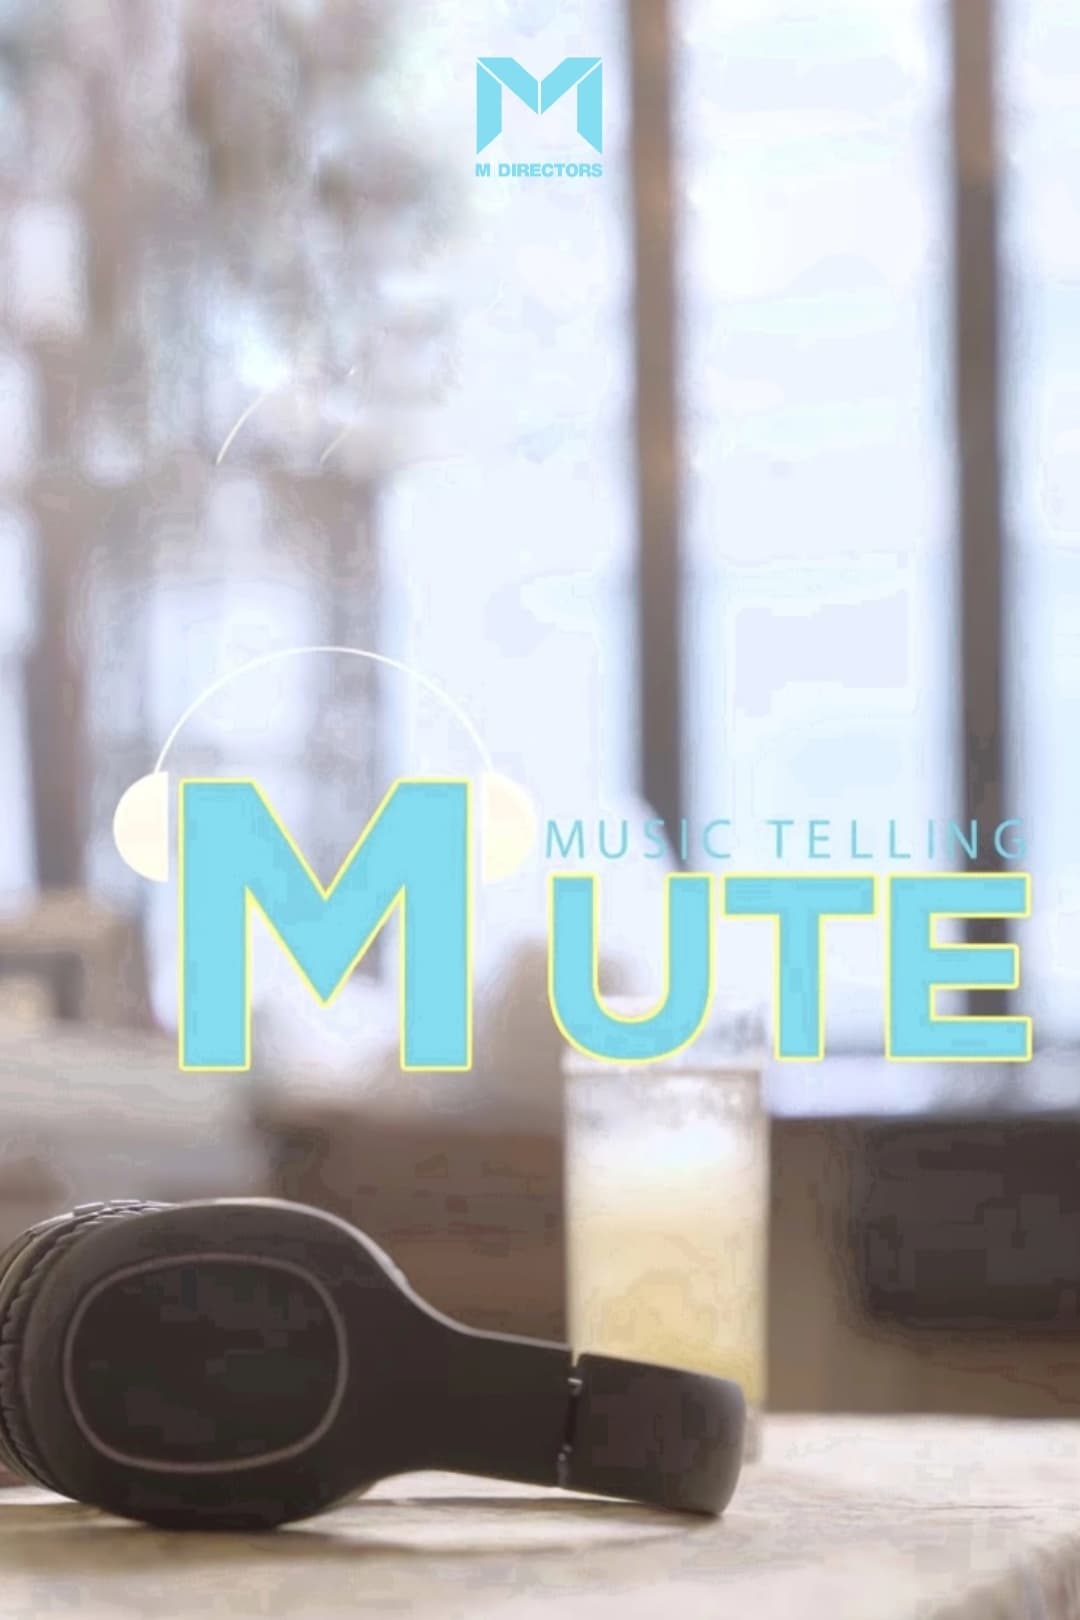 MUTE: Music Telling